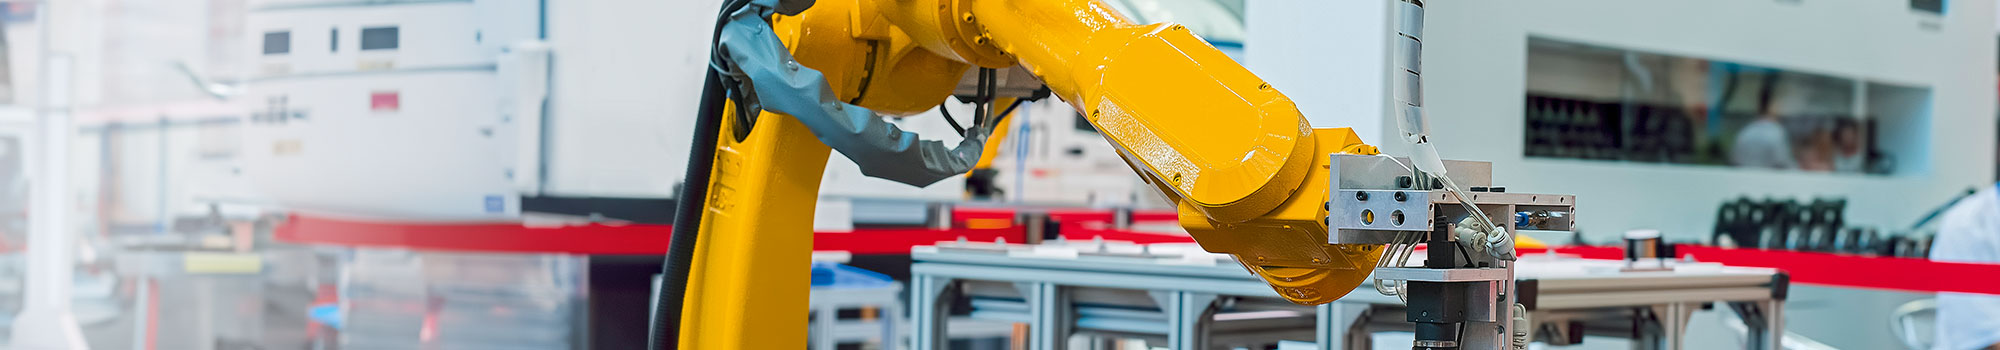 Robotergesteuerte handbetriebene werkzeugmaschine in einer industriellen fertigungsstätte